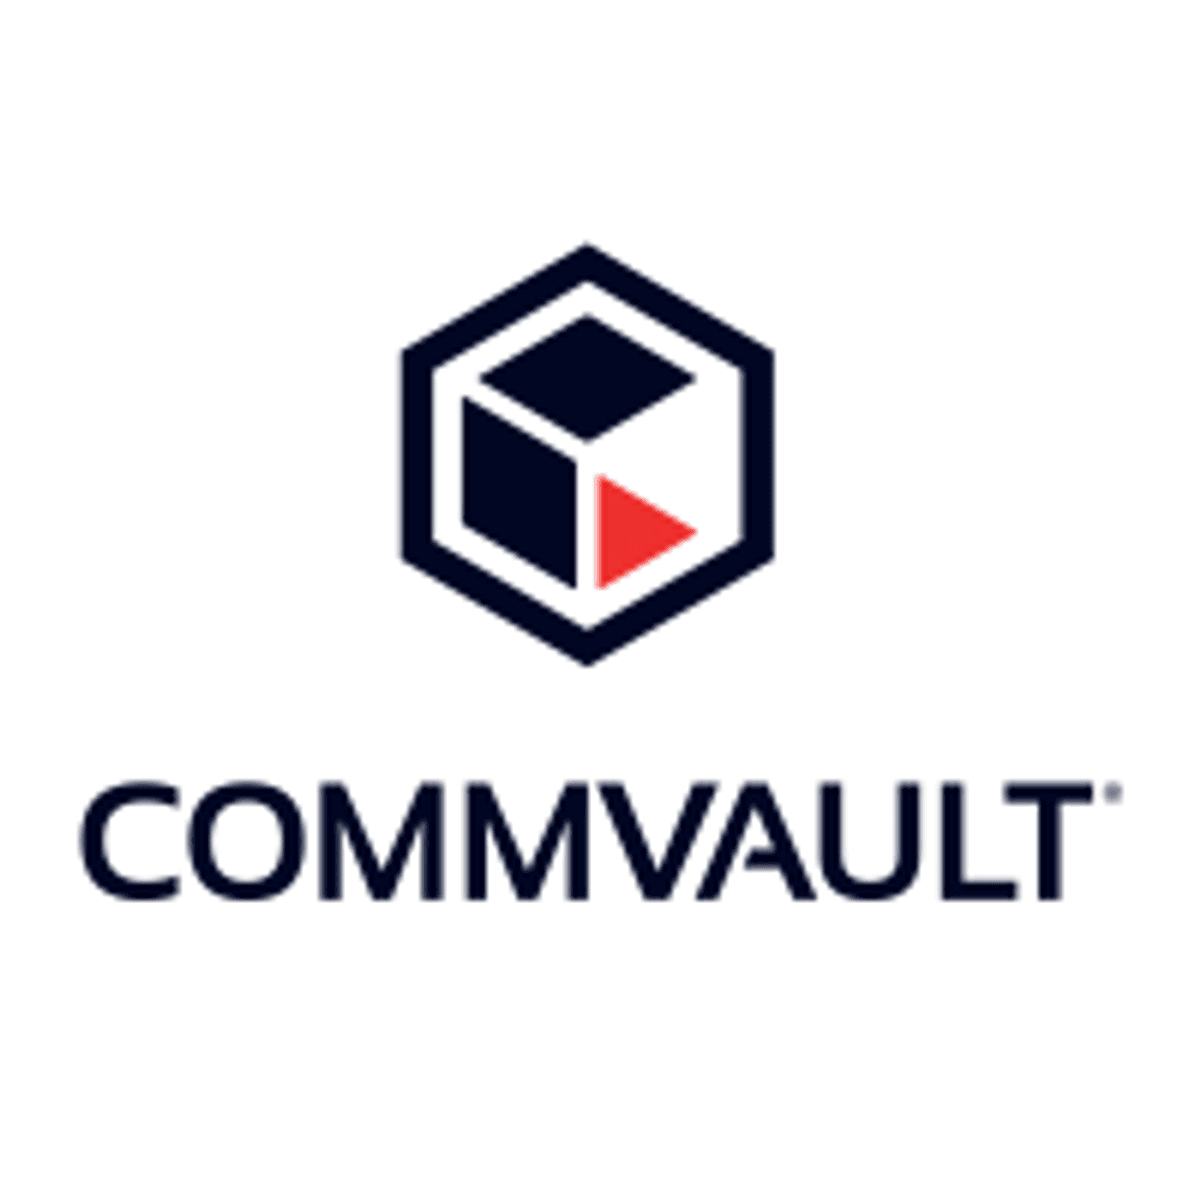 Commvault consolideert en tweakt product aanbod image